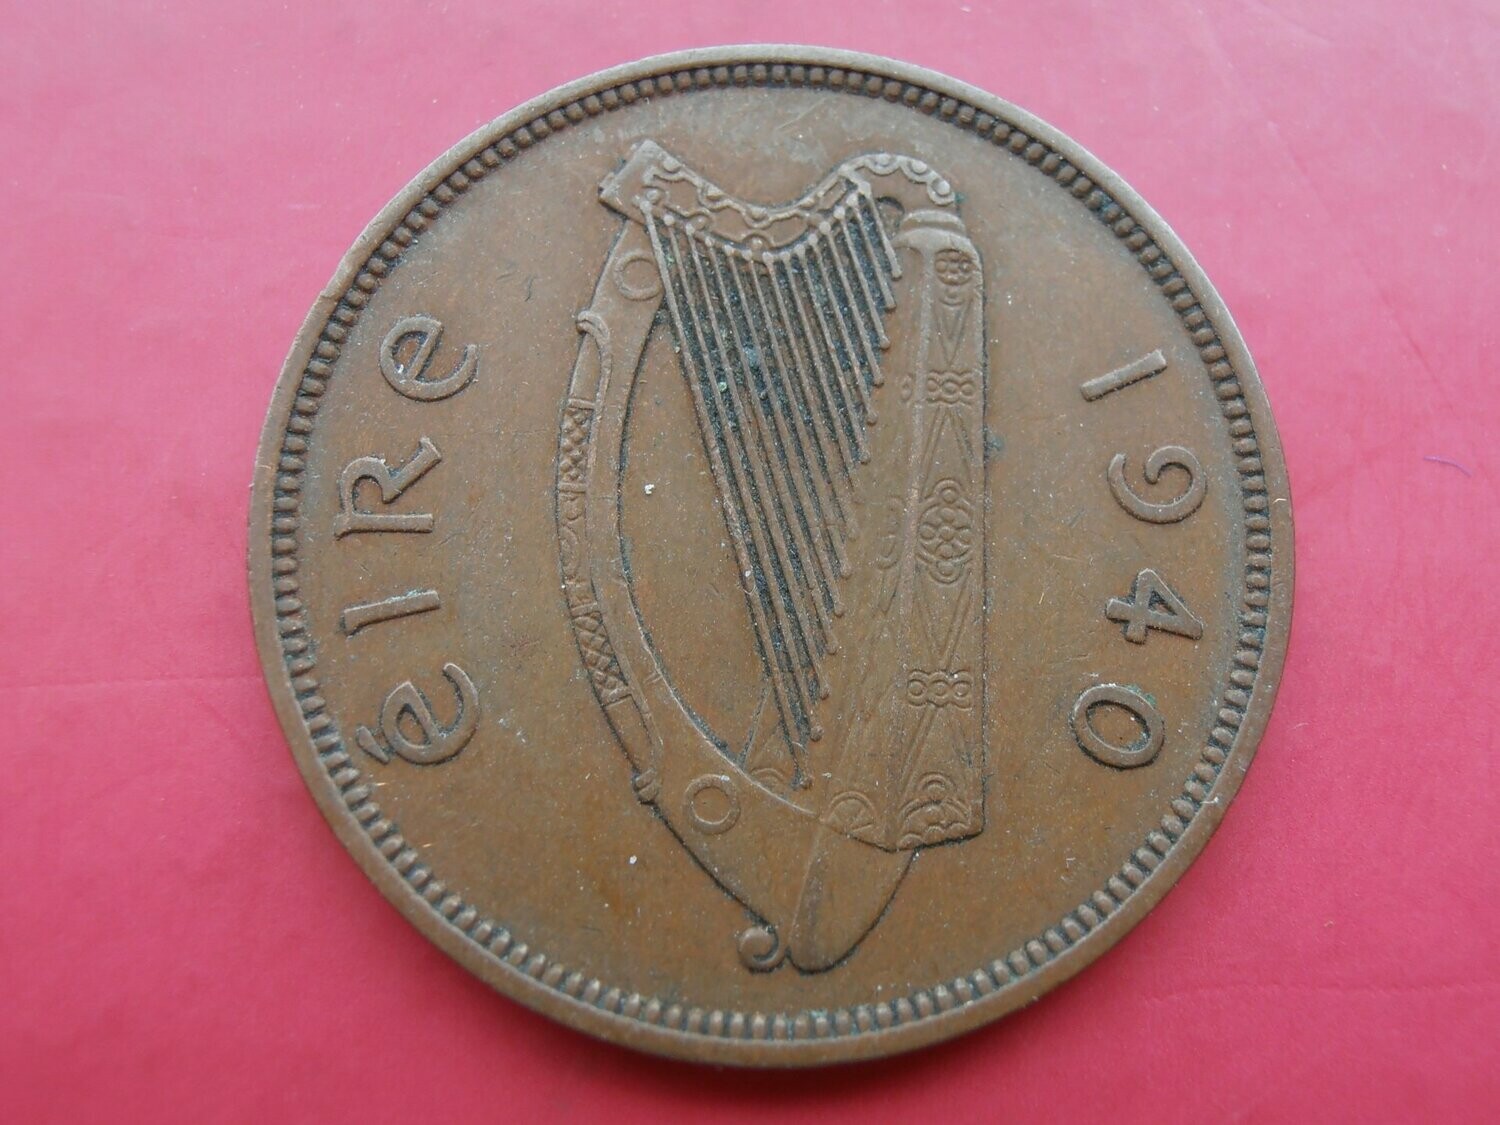 Ireland Penny - 1940 (Scarce)